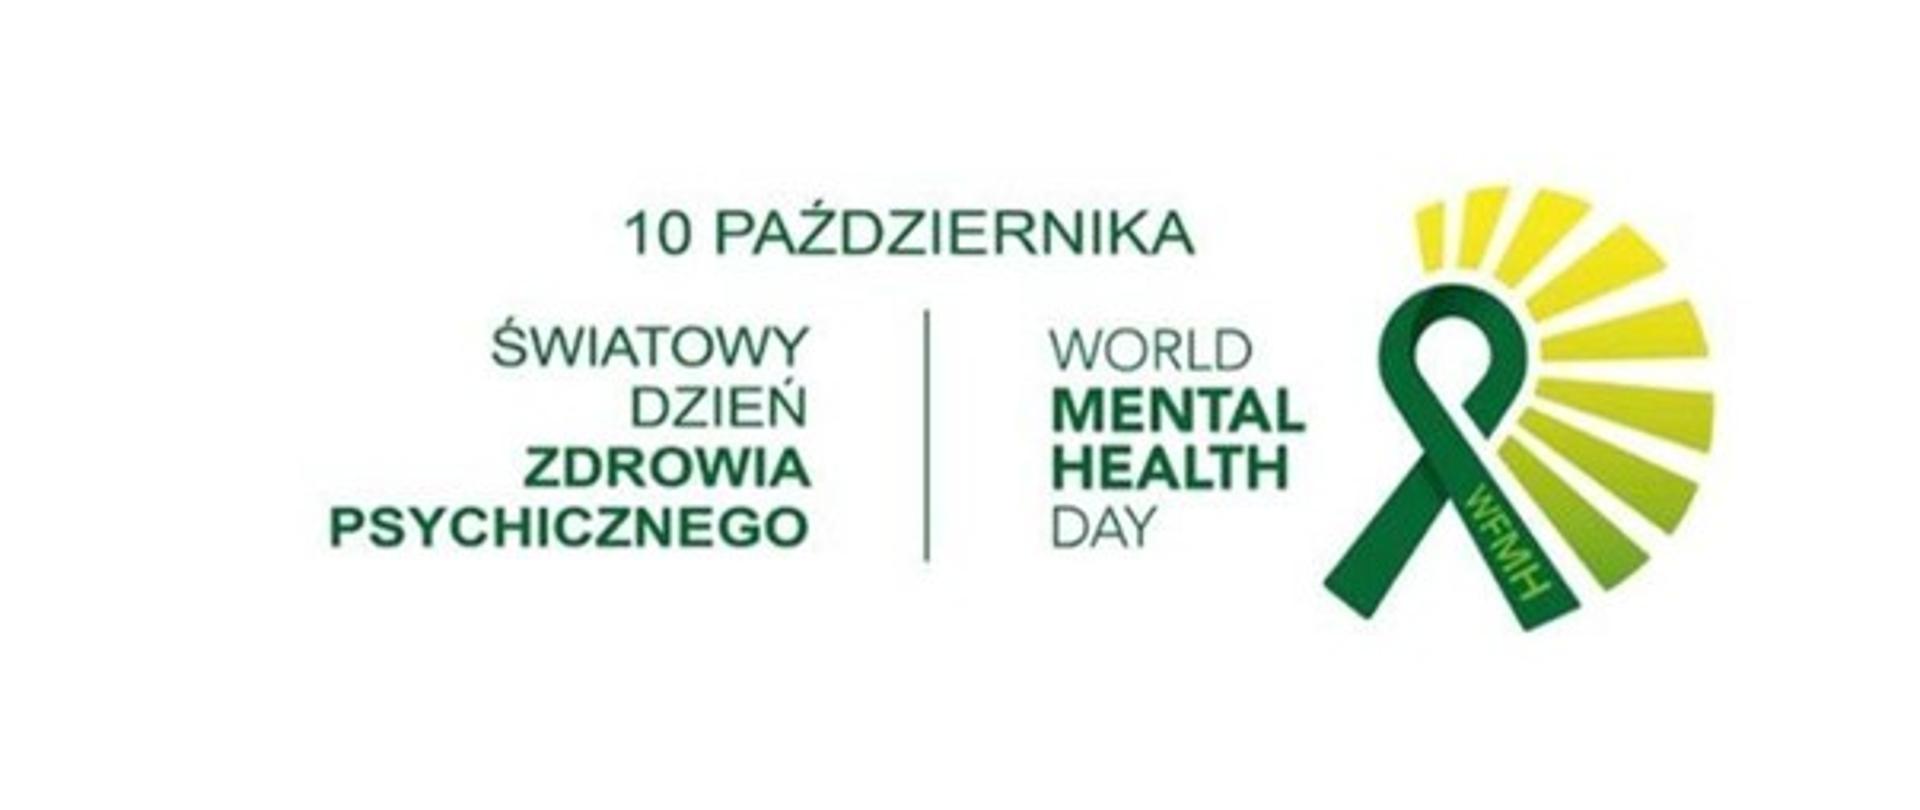 Światowy dzień zdrowia psychicznego 